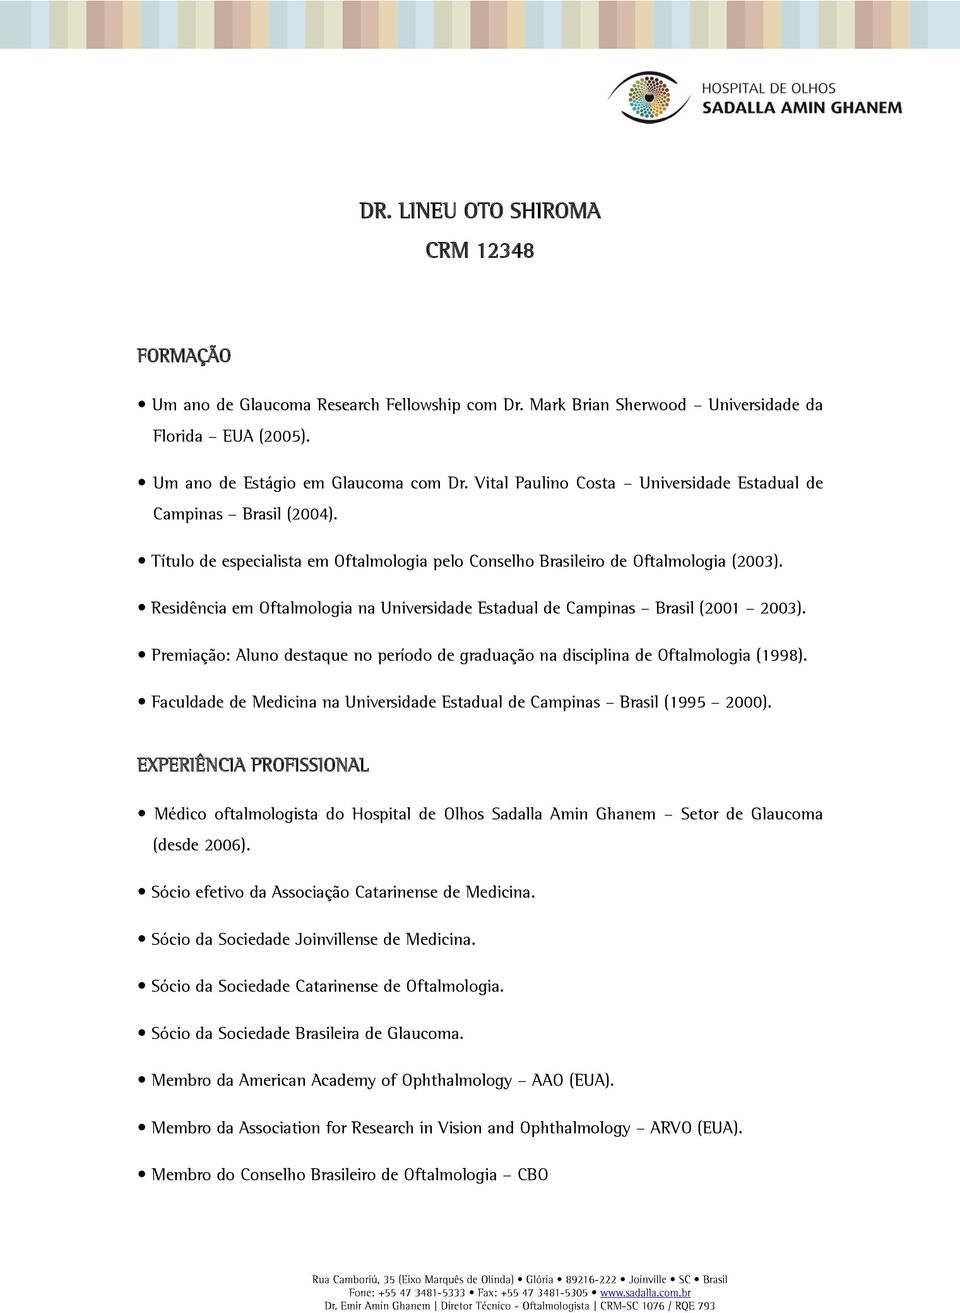 Residência em Oftalmologia na Universidade Estadual de Campinas Brasil (2001 2003). Premiação: Aluno destaque no período de graduação na disciplina de Oftalmologia (1998).